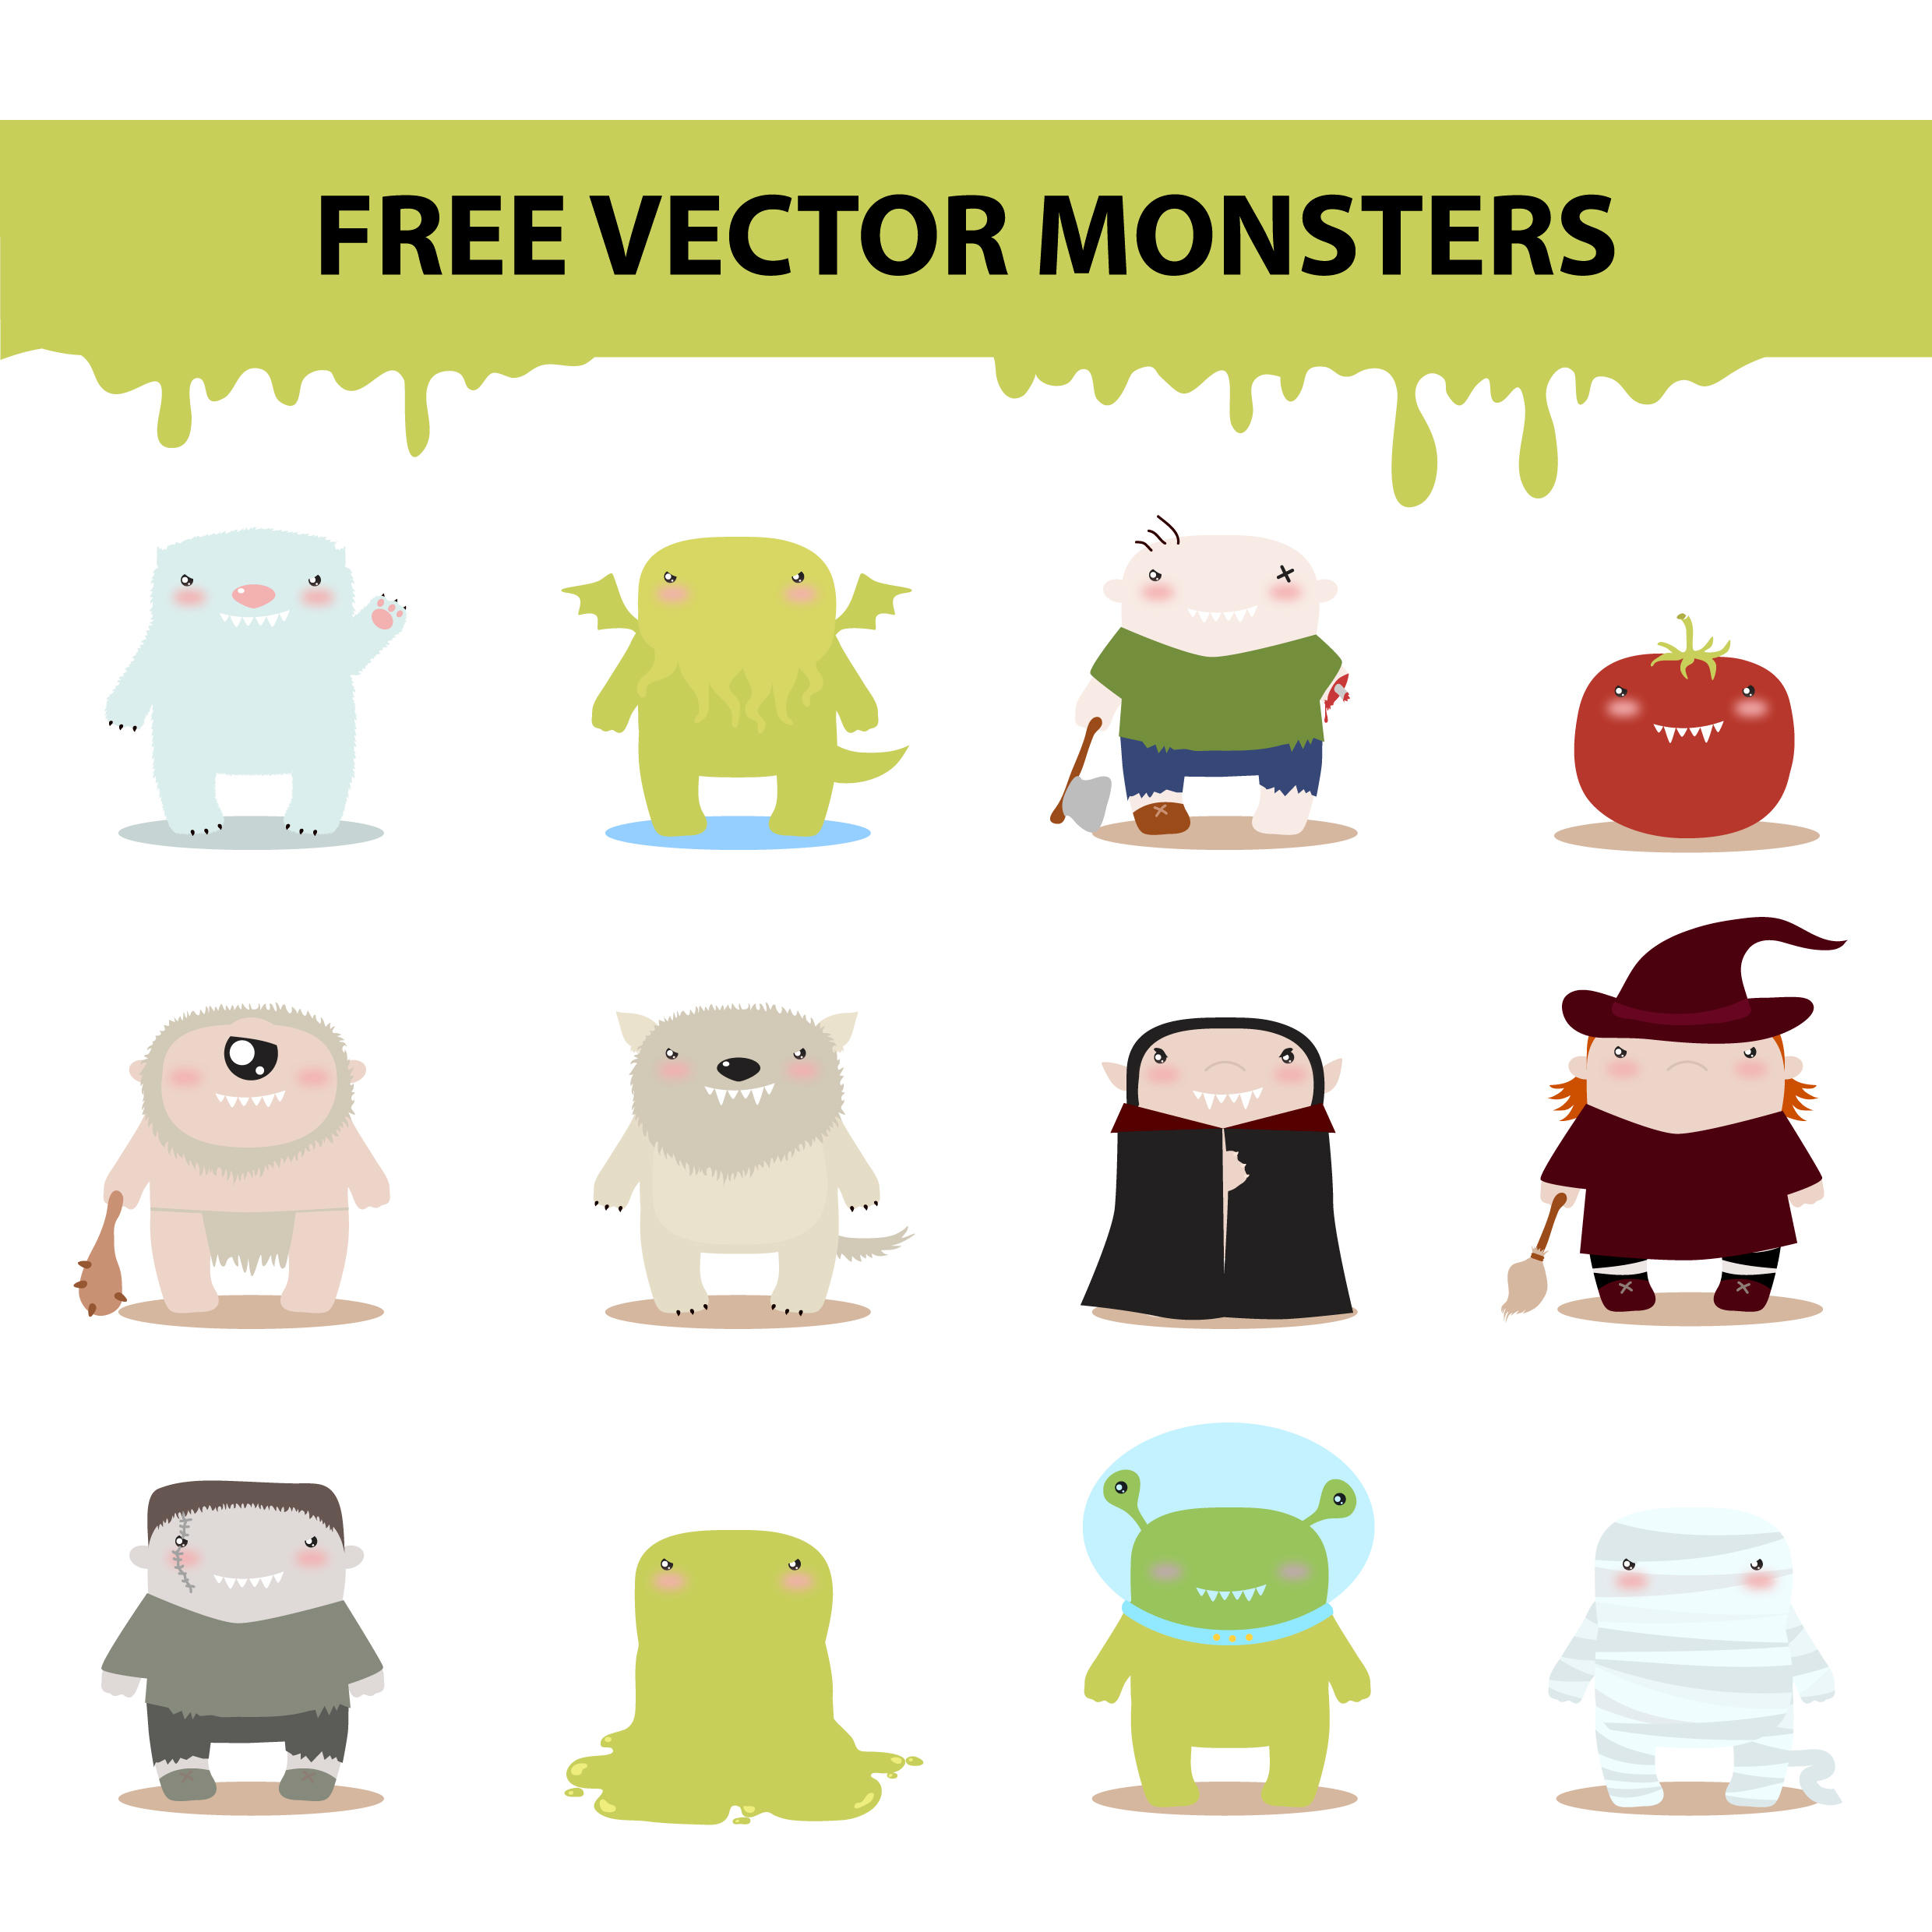 free vector monsters by harridan